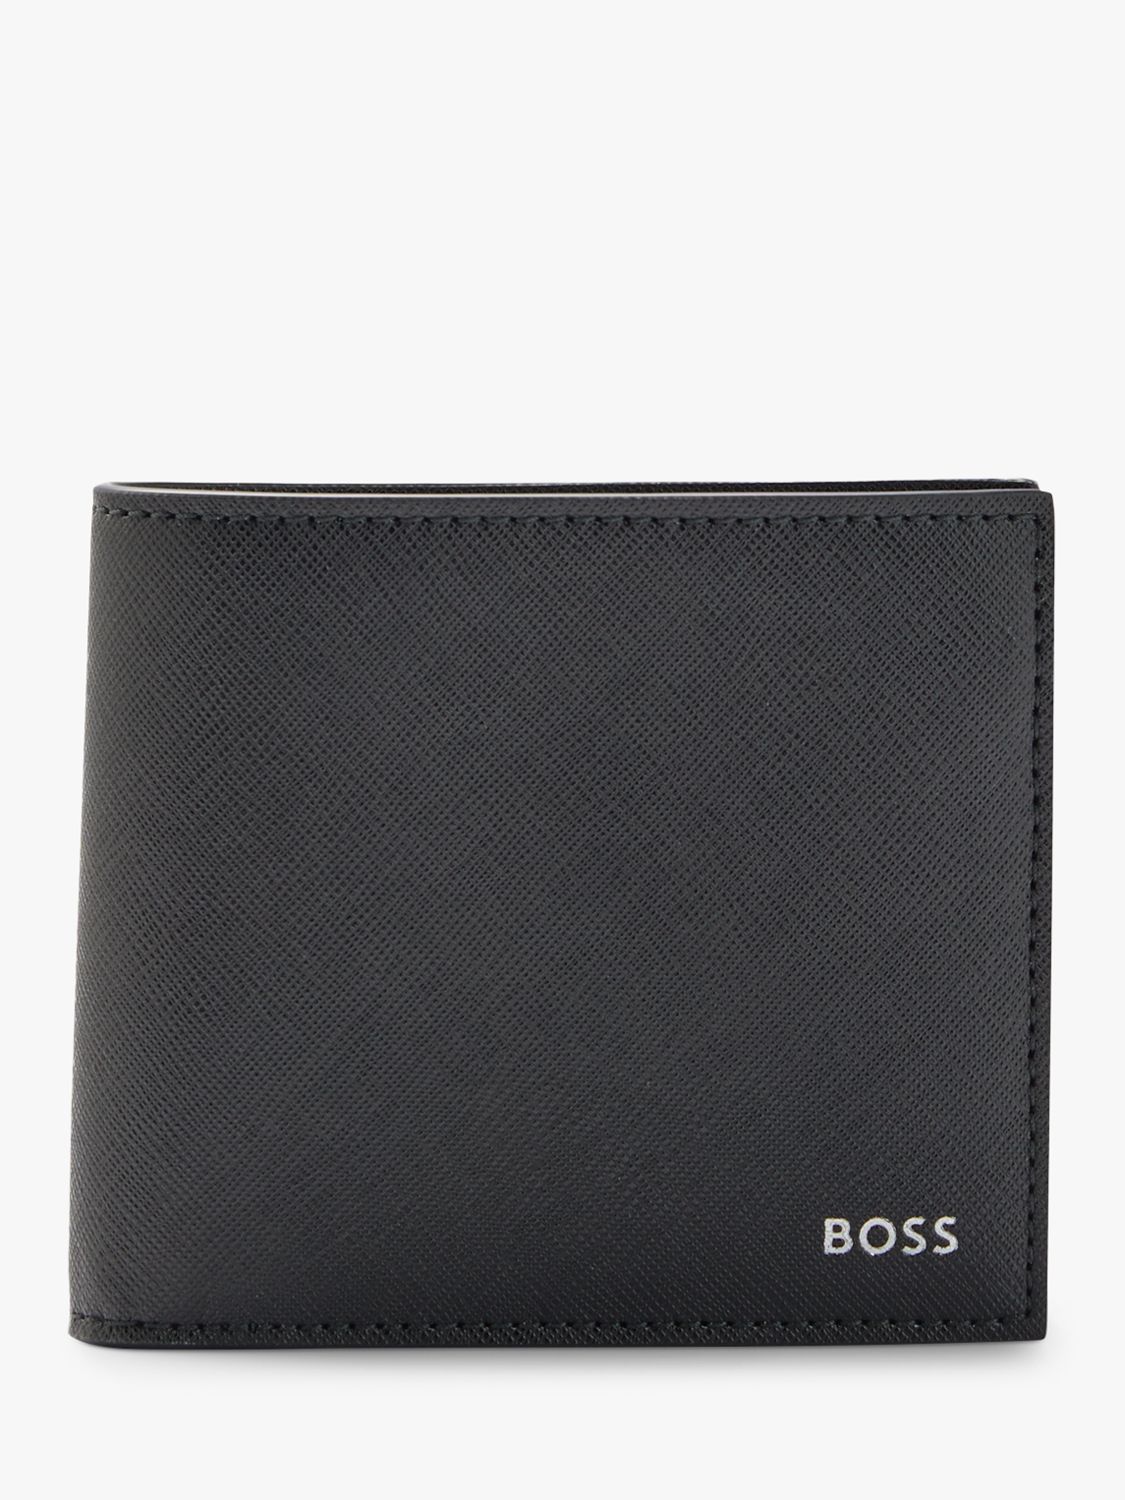 BOSS Zair Leather Wallet